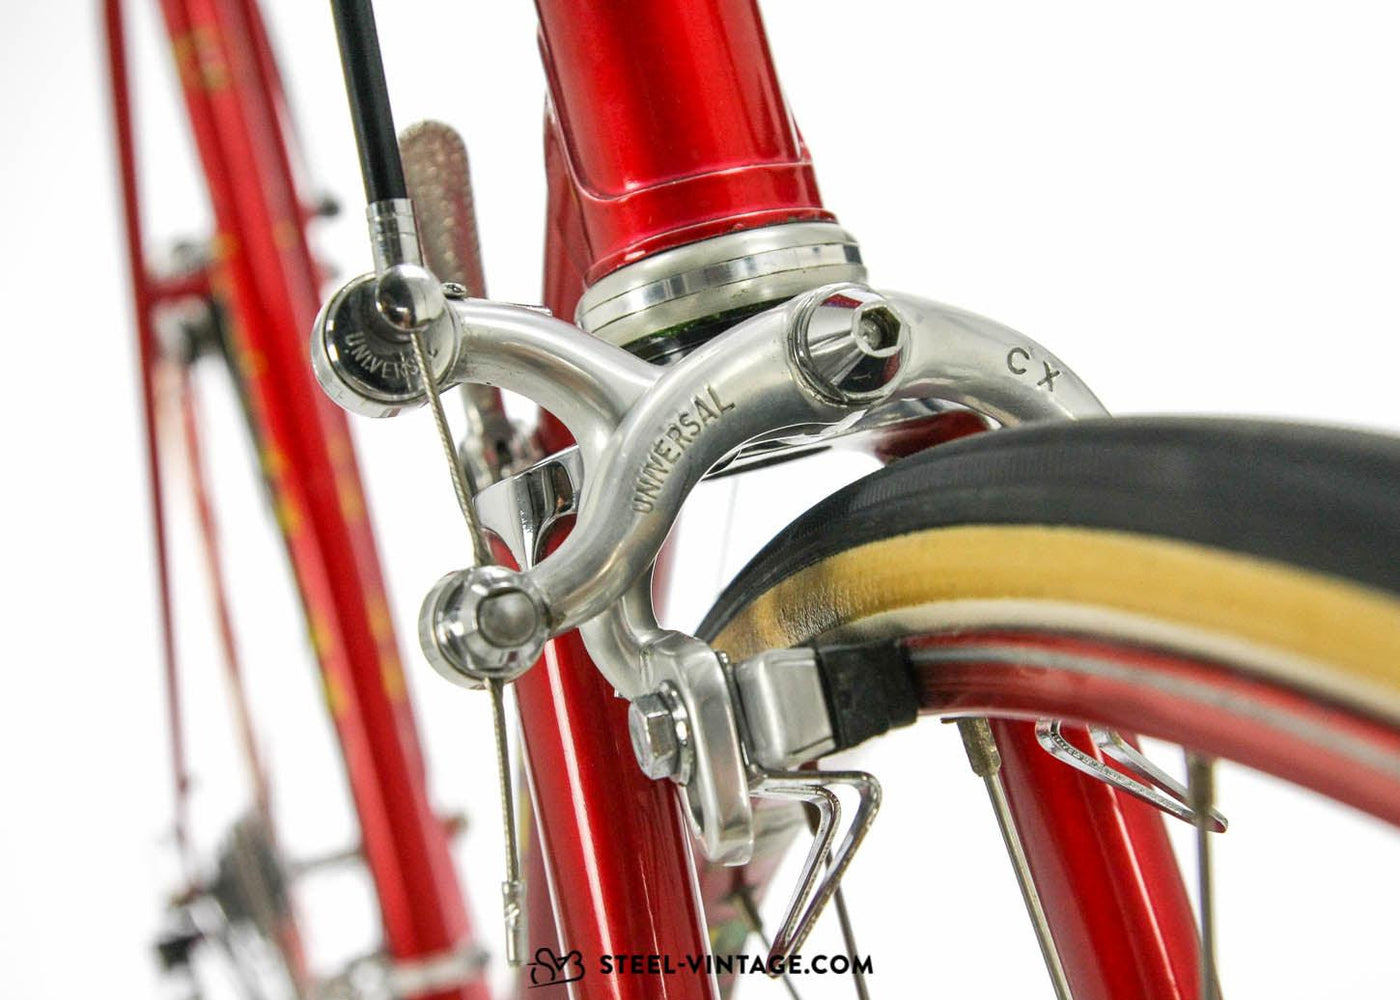 Patelli Titanium Lightweight Eroica Bike 1978 - Steel Vintage Bikes